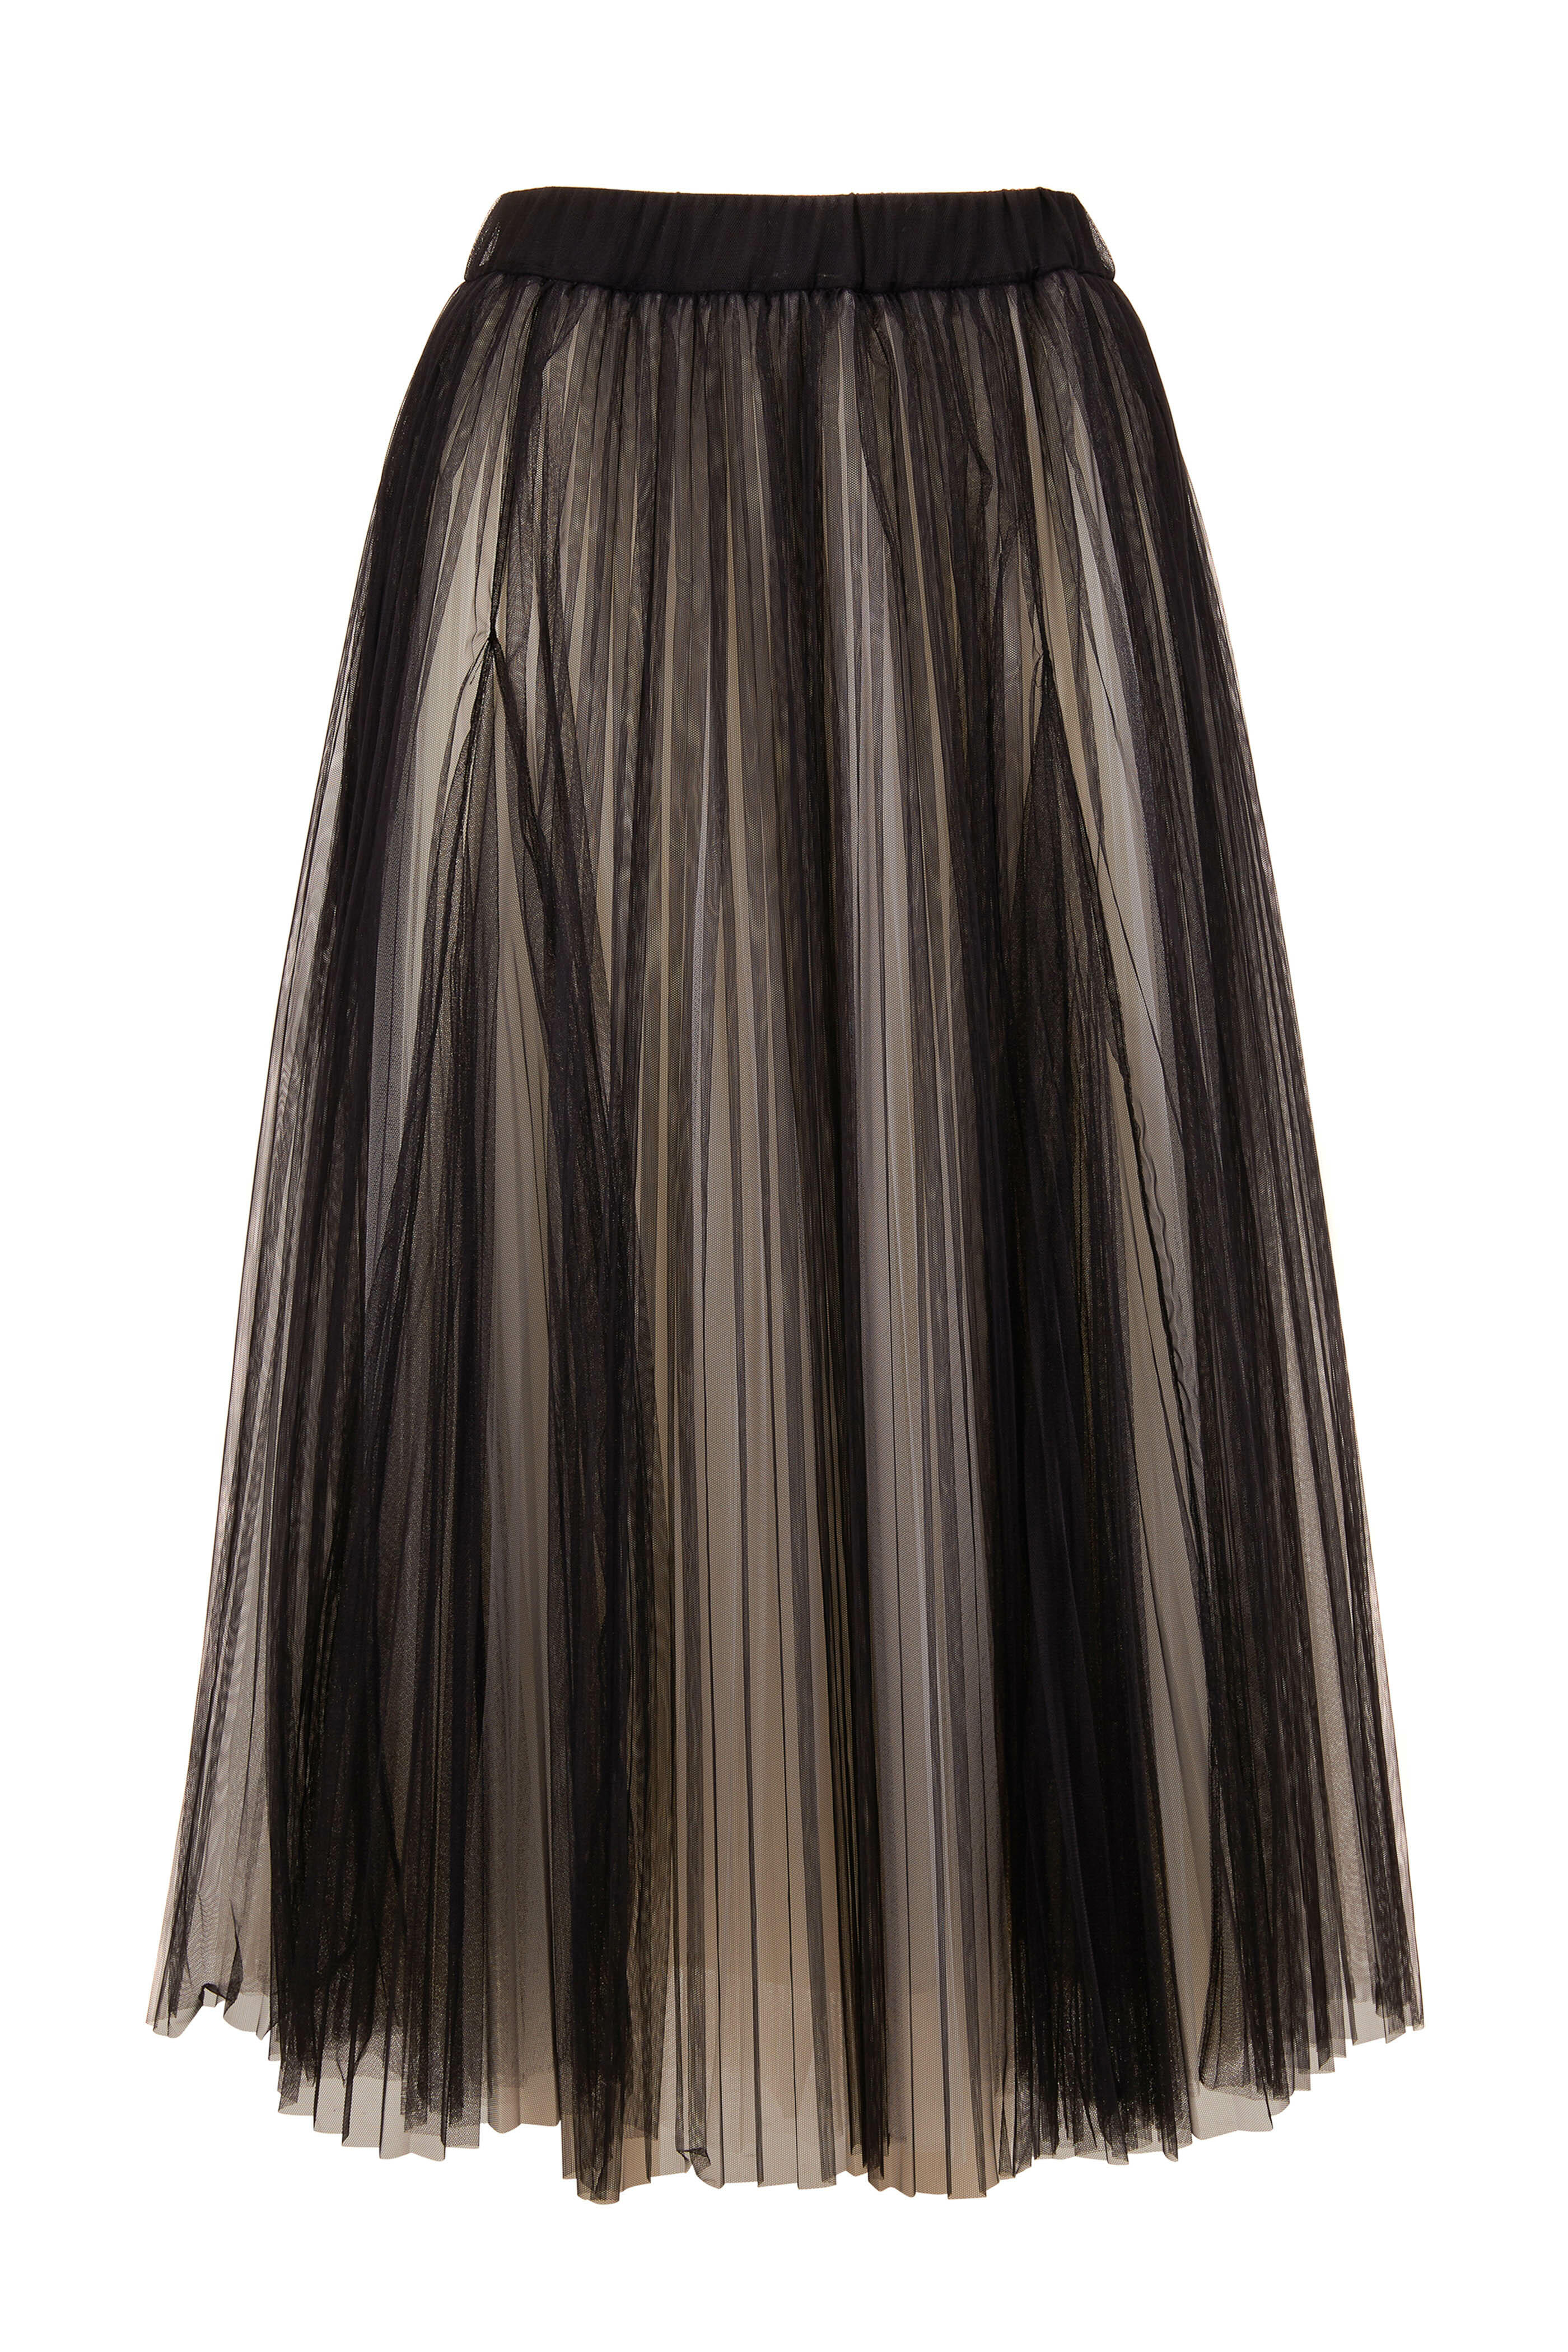 Brunello Cucinelli - Black Tulle & White Underlay Long Skirt